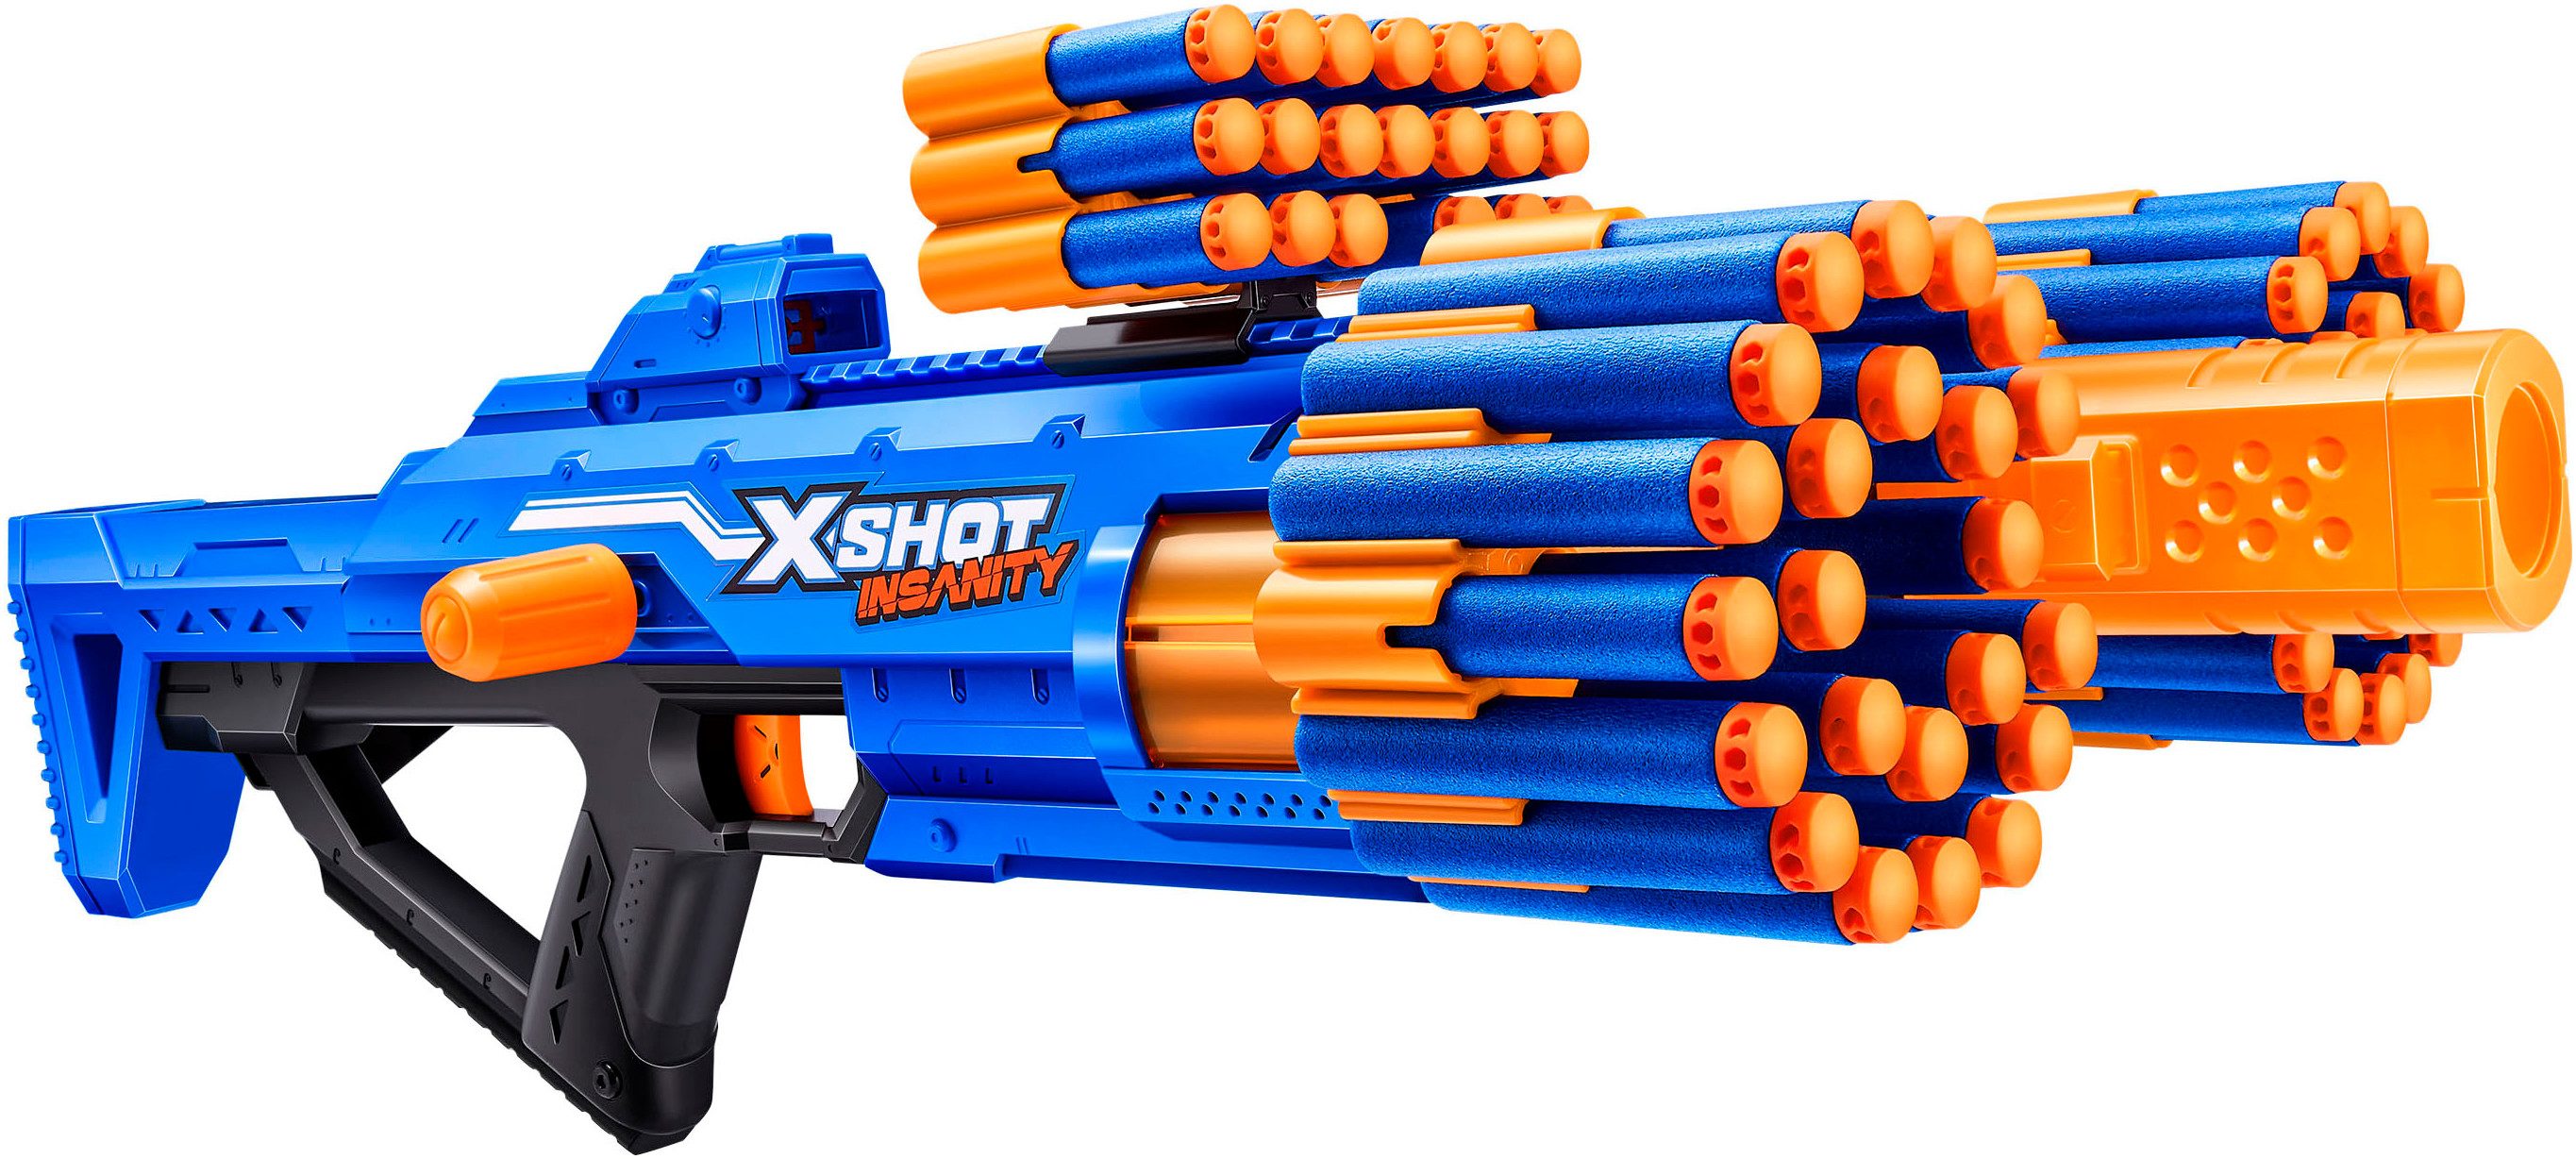 Blaster XSHOT, Insanity Blaster Berzerko mit Darts